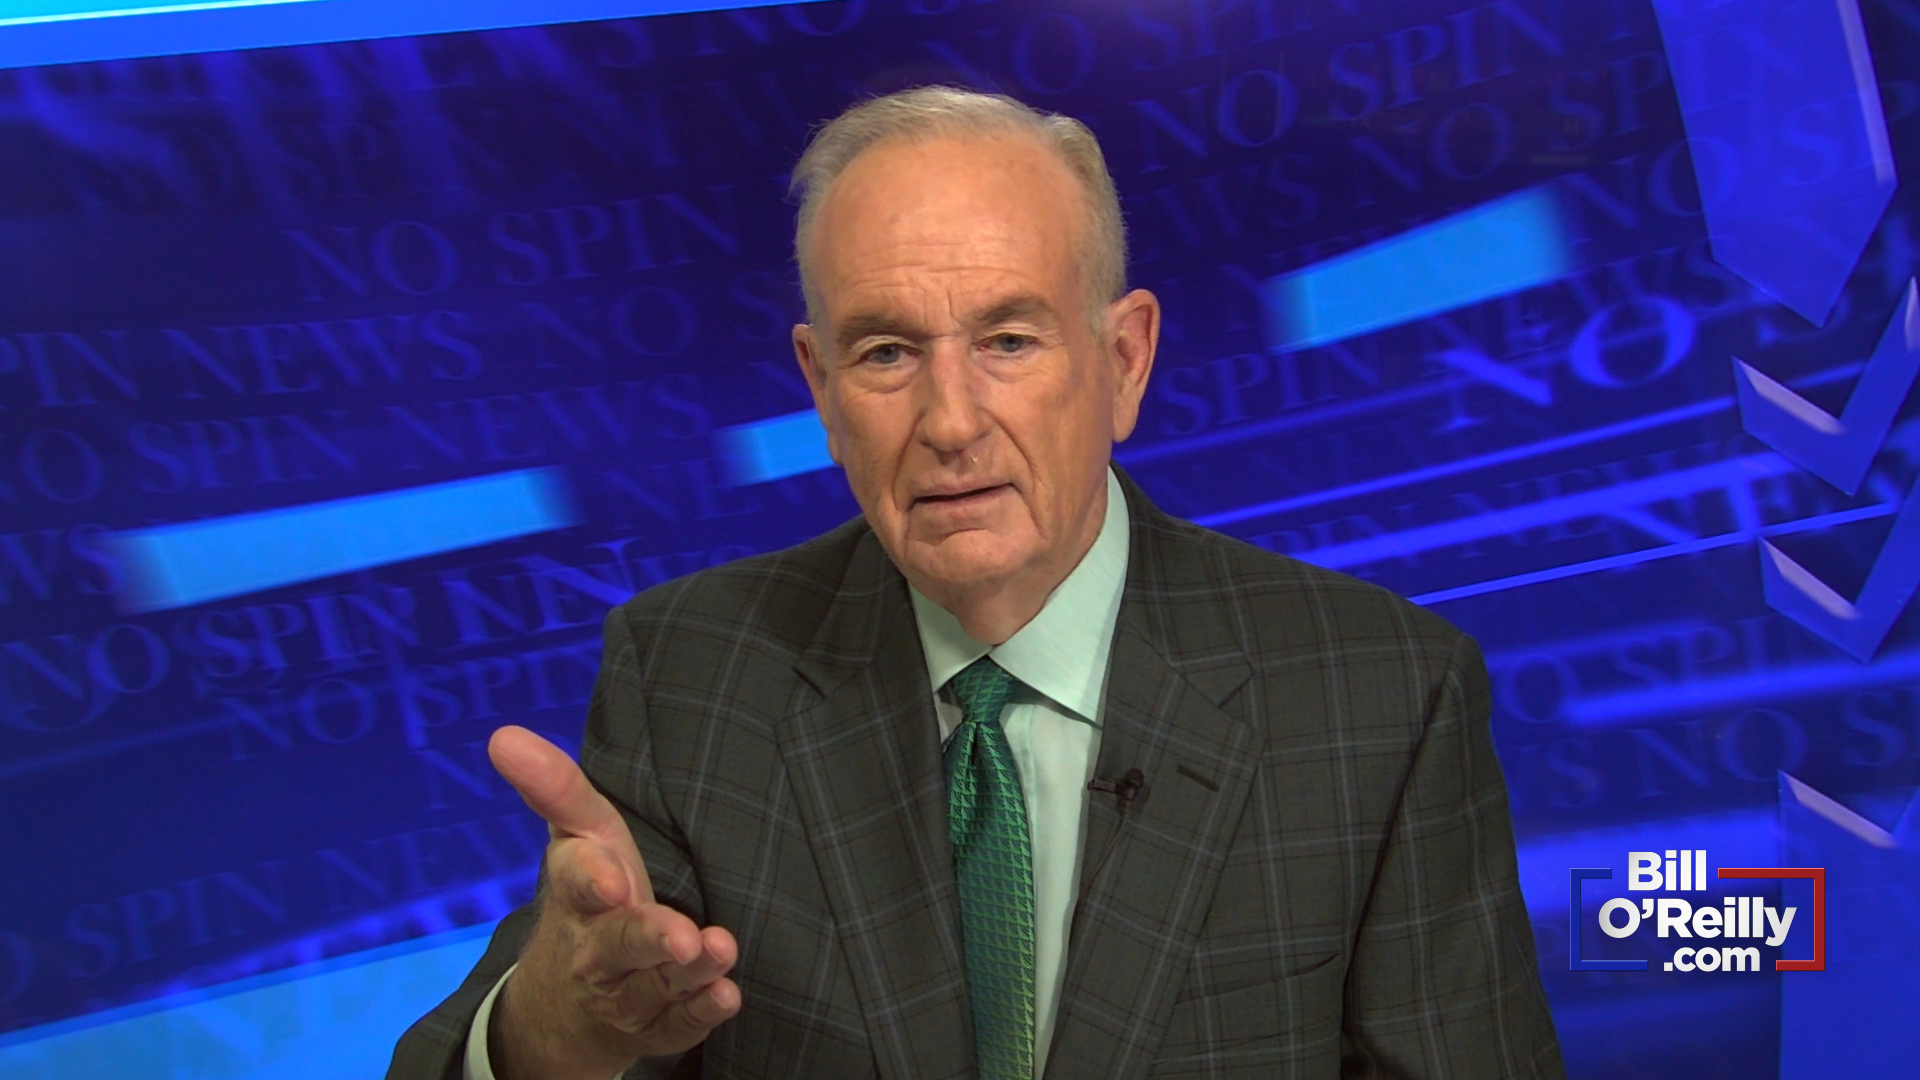 O'Reilly the Fox News 'Beat Cop'